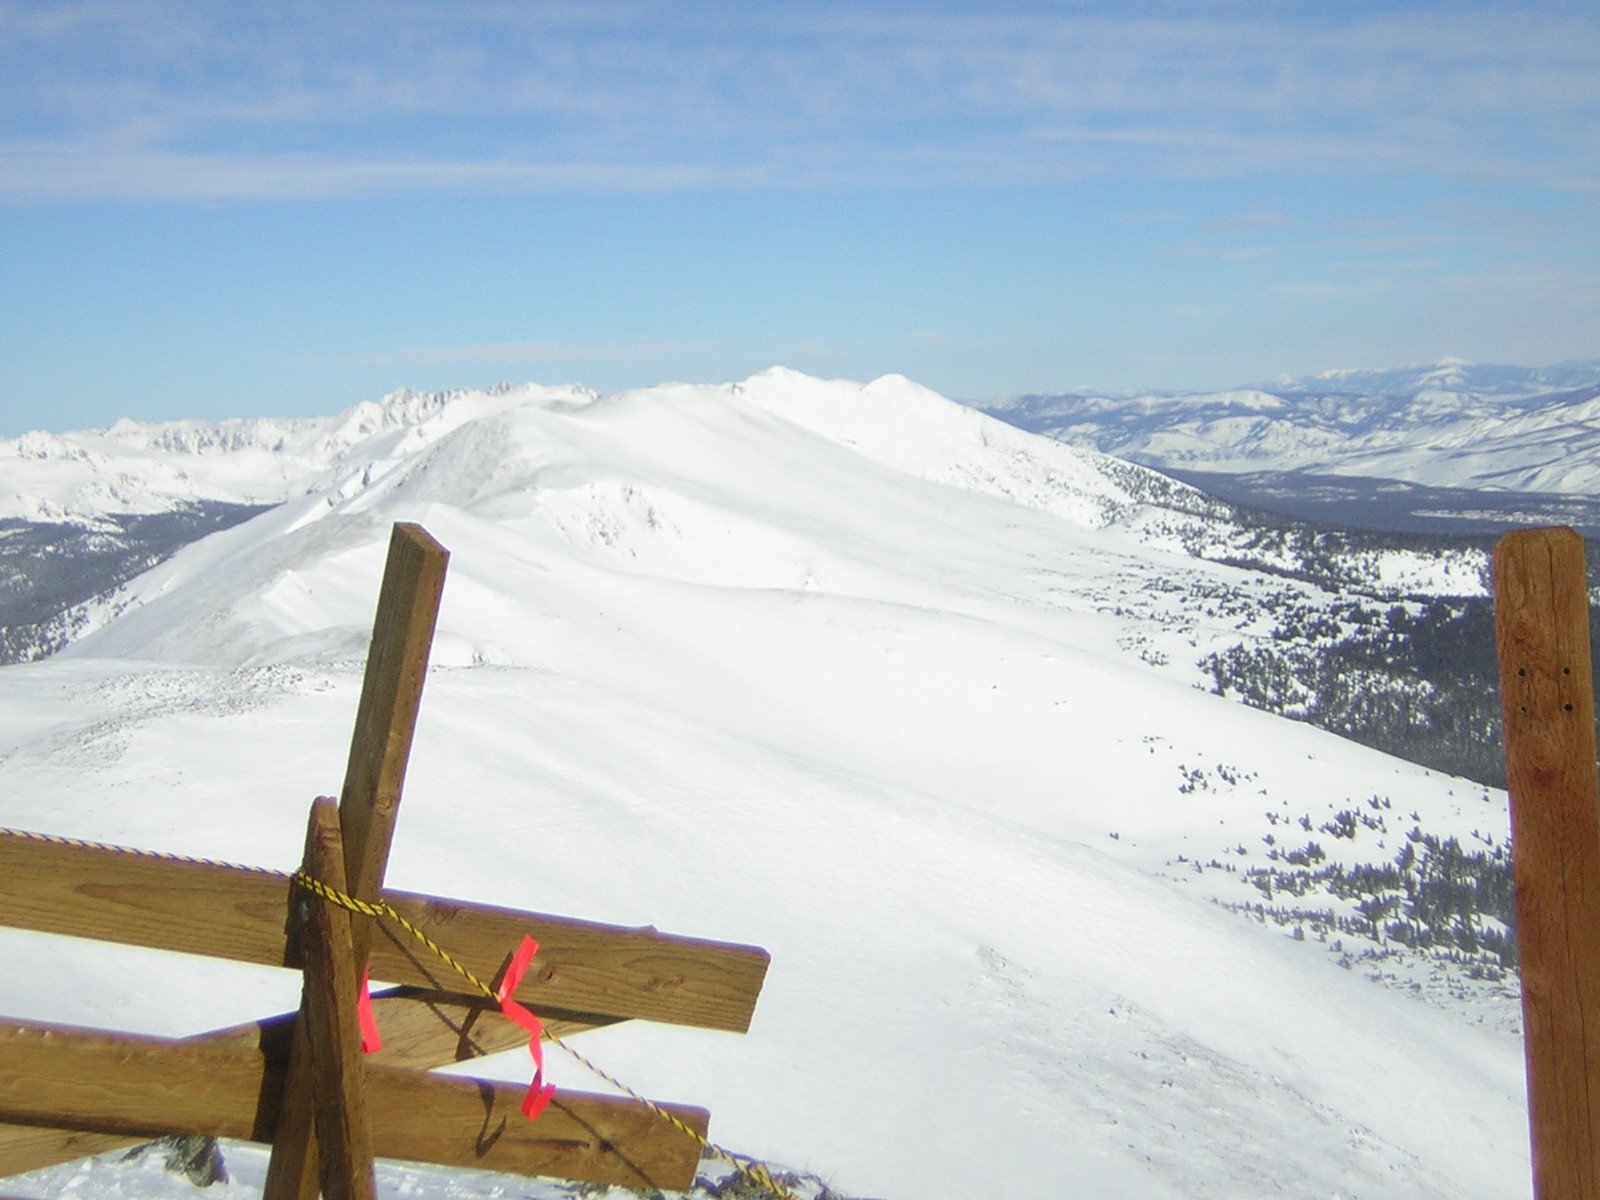 Breck summit